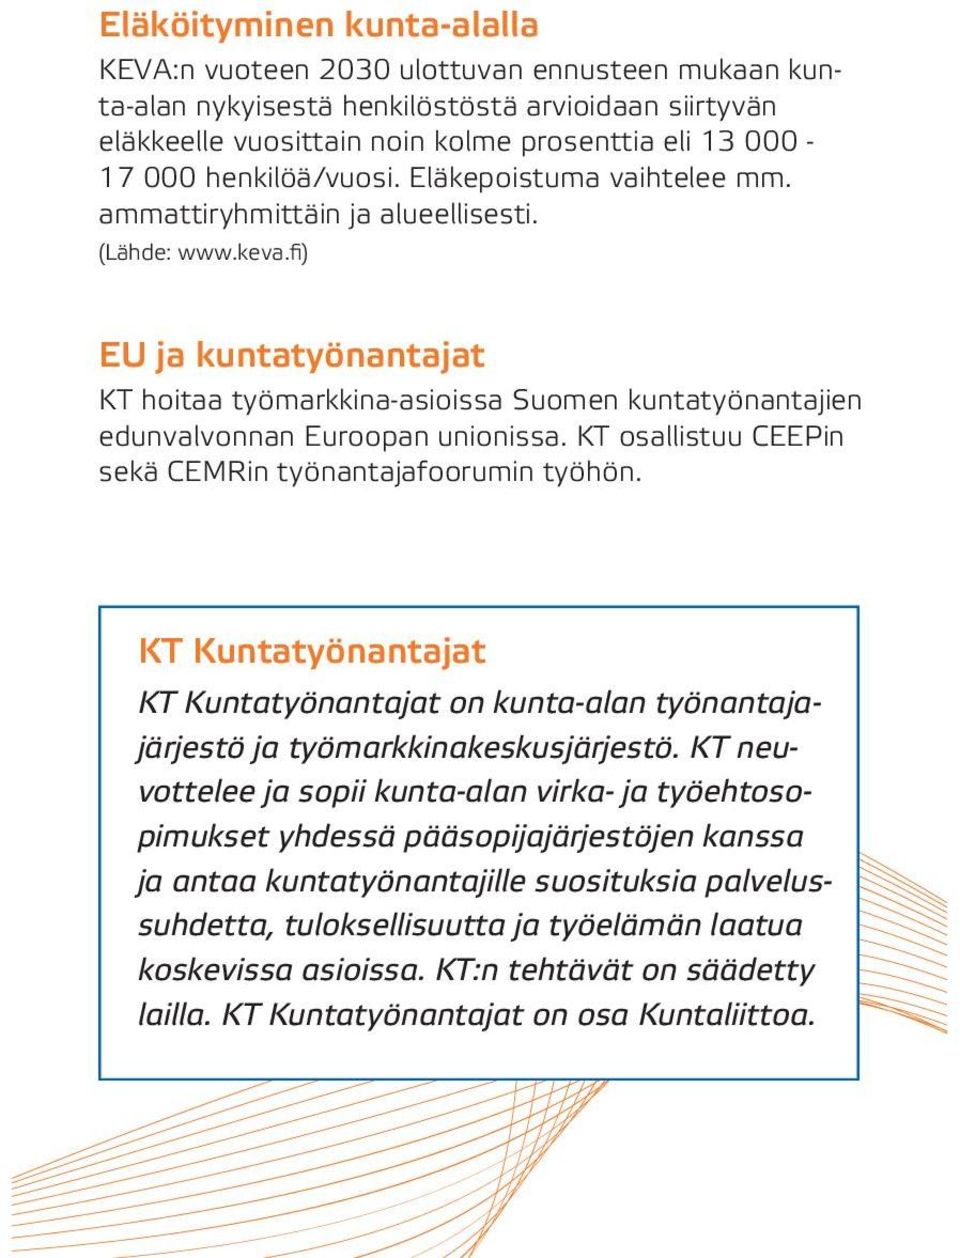 fi) EU ja kuntatyönantajat KT hoitaa työmarkkina-asioissa Suomen kuntatyönantajien edunvalvonnan Euroopan unionissa. KT osallistuu CEEPin sekä CEMRin työnantajafoorumin työhön.